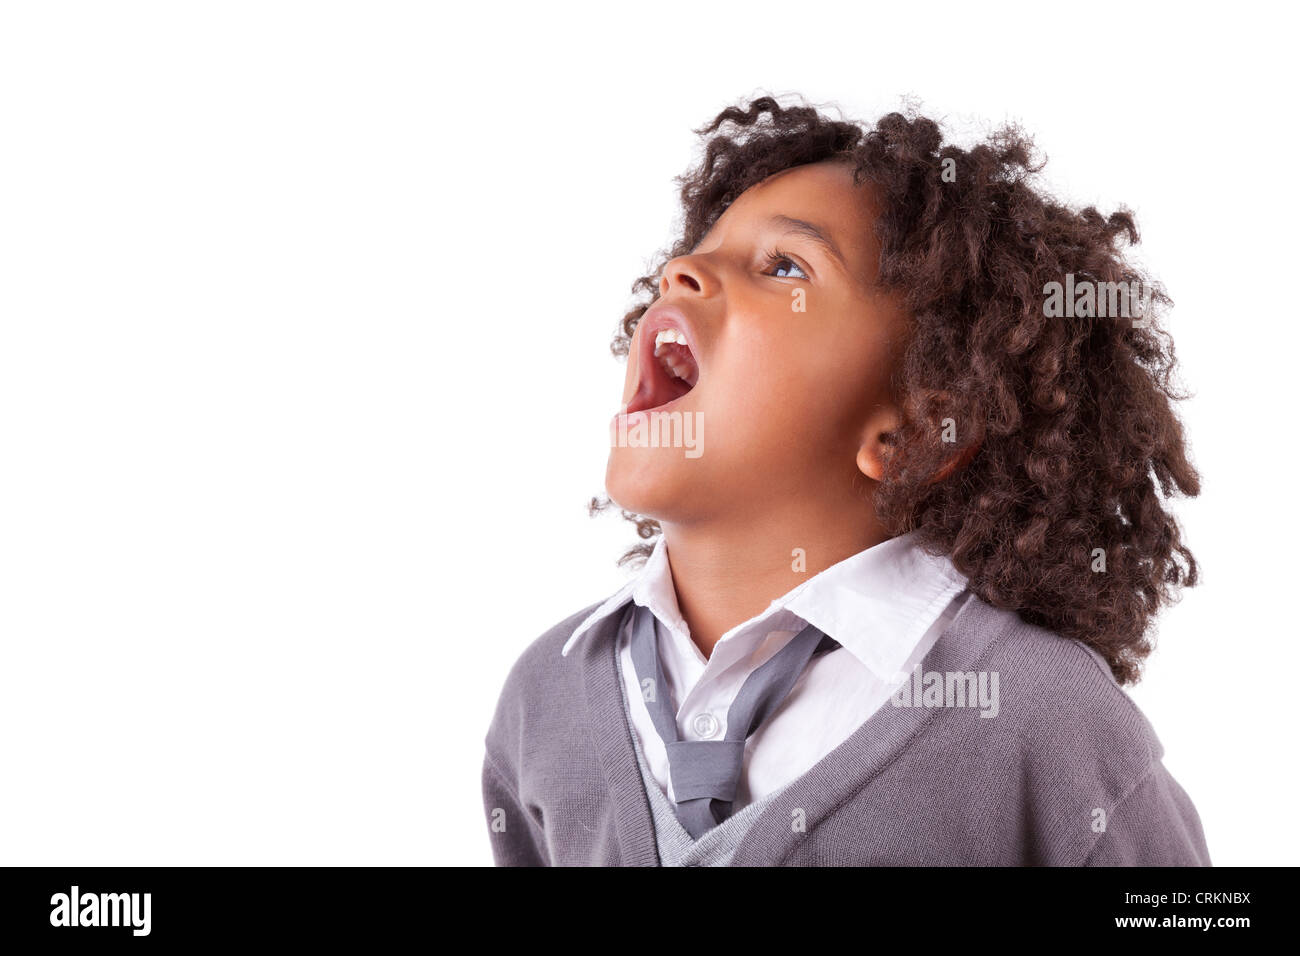 Portrait d'un mignon petit garçon africain crier,isolé sur fond blanc Banque D'Images